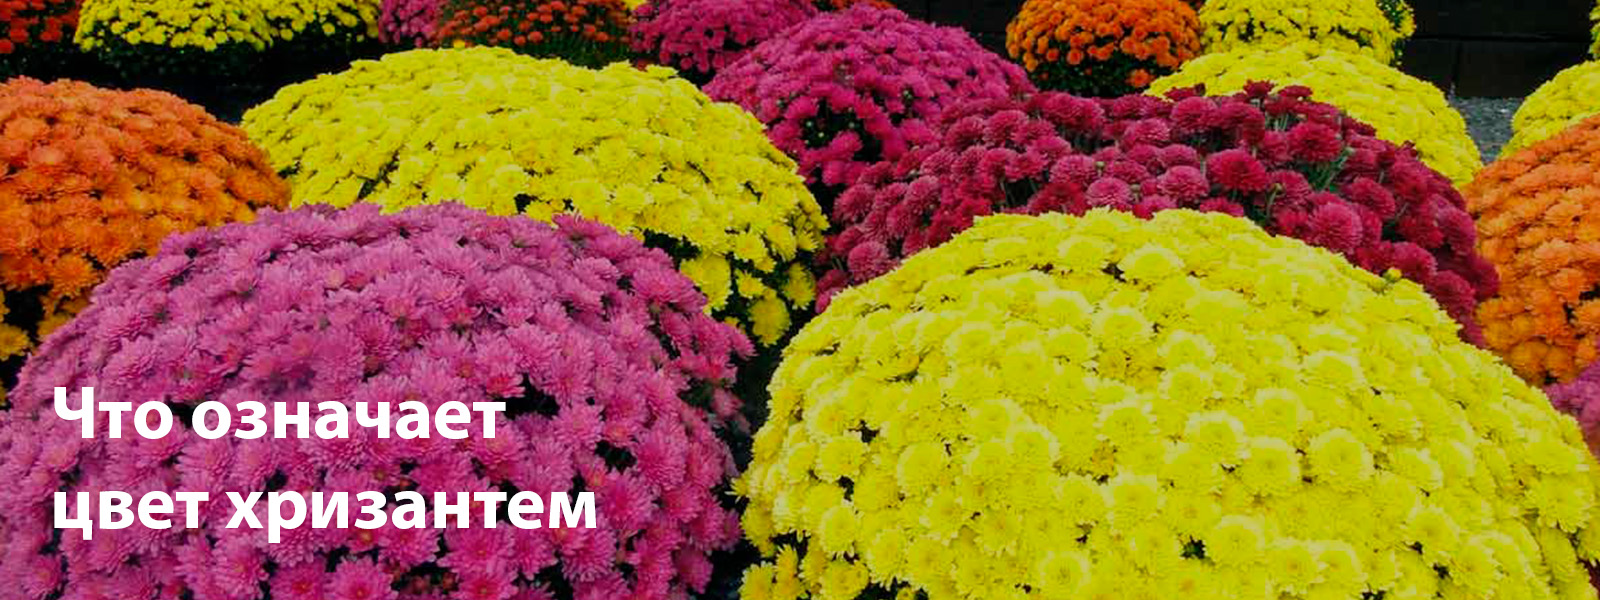 Цвет хризантемы и его значение